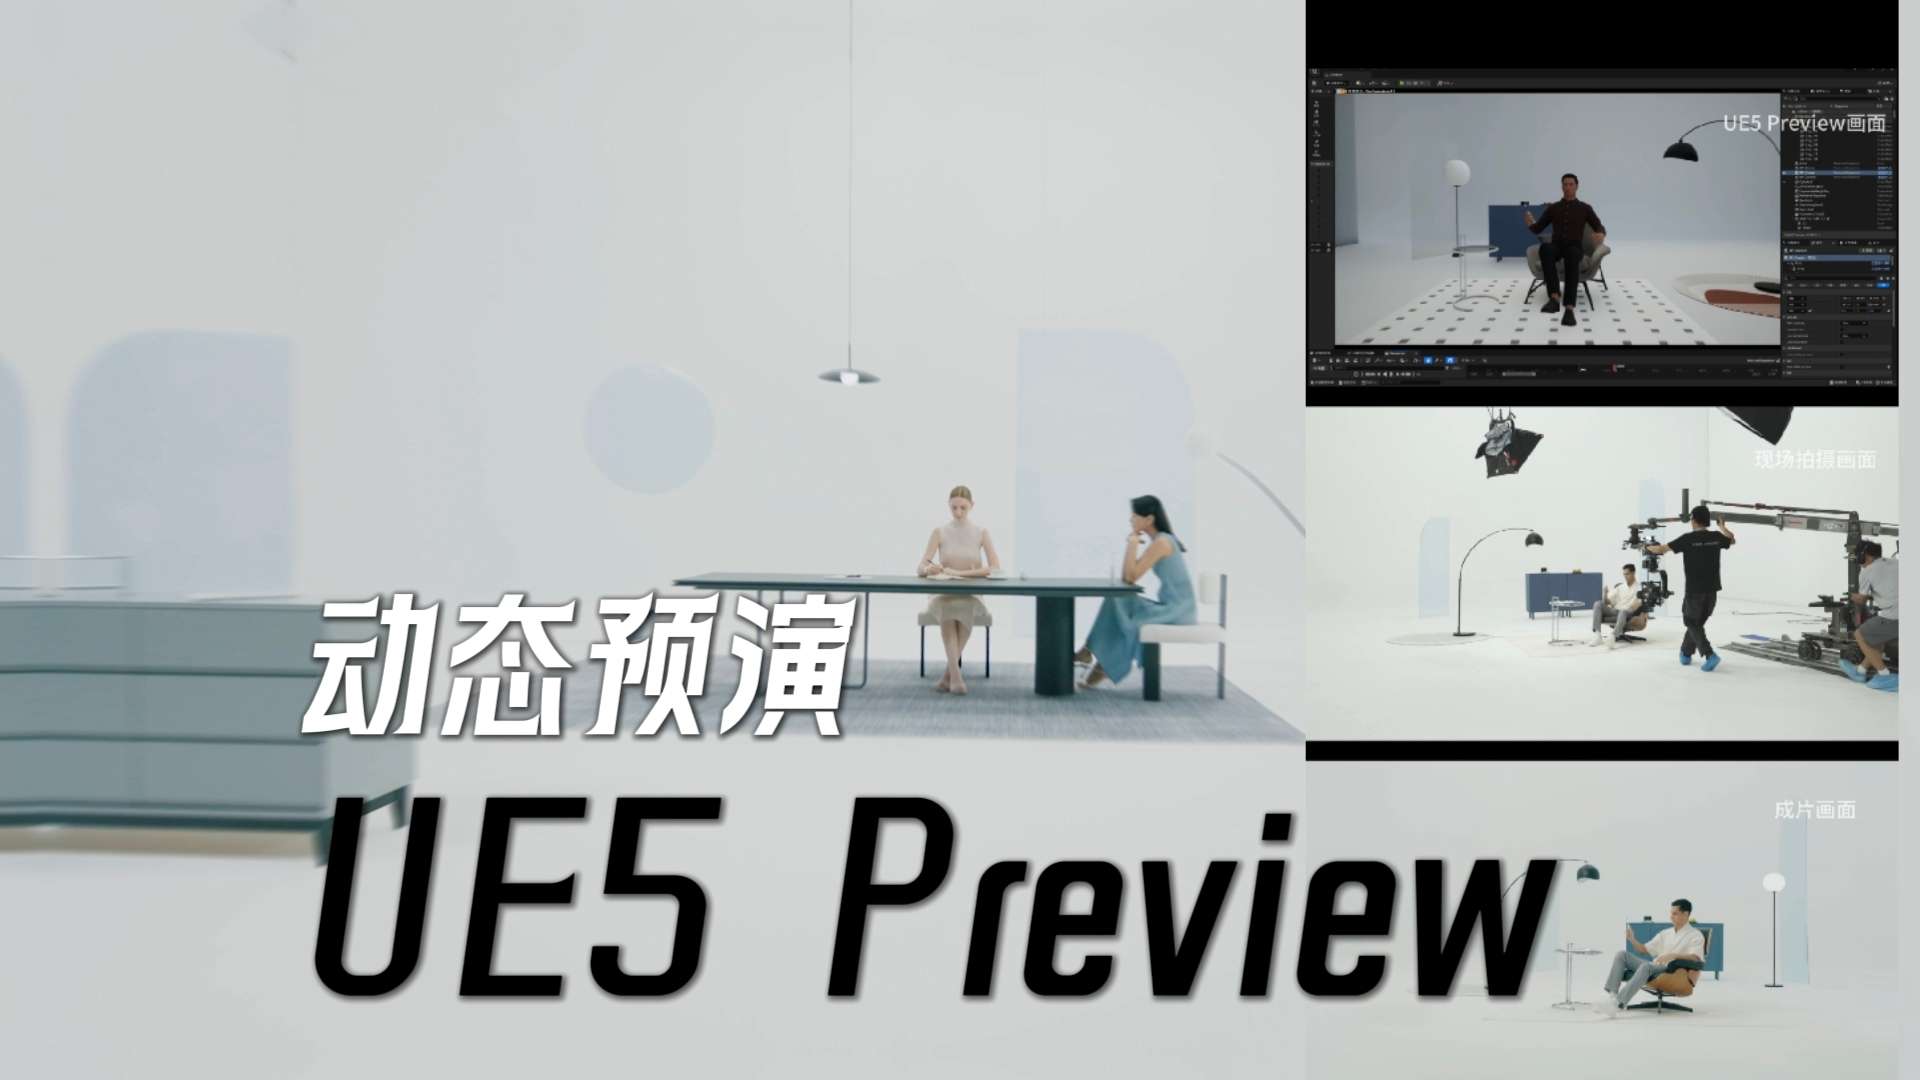 UE5 Preview 动态预演《徕芬扫振电动牙刷》问答篇TVC 成片对比